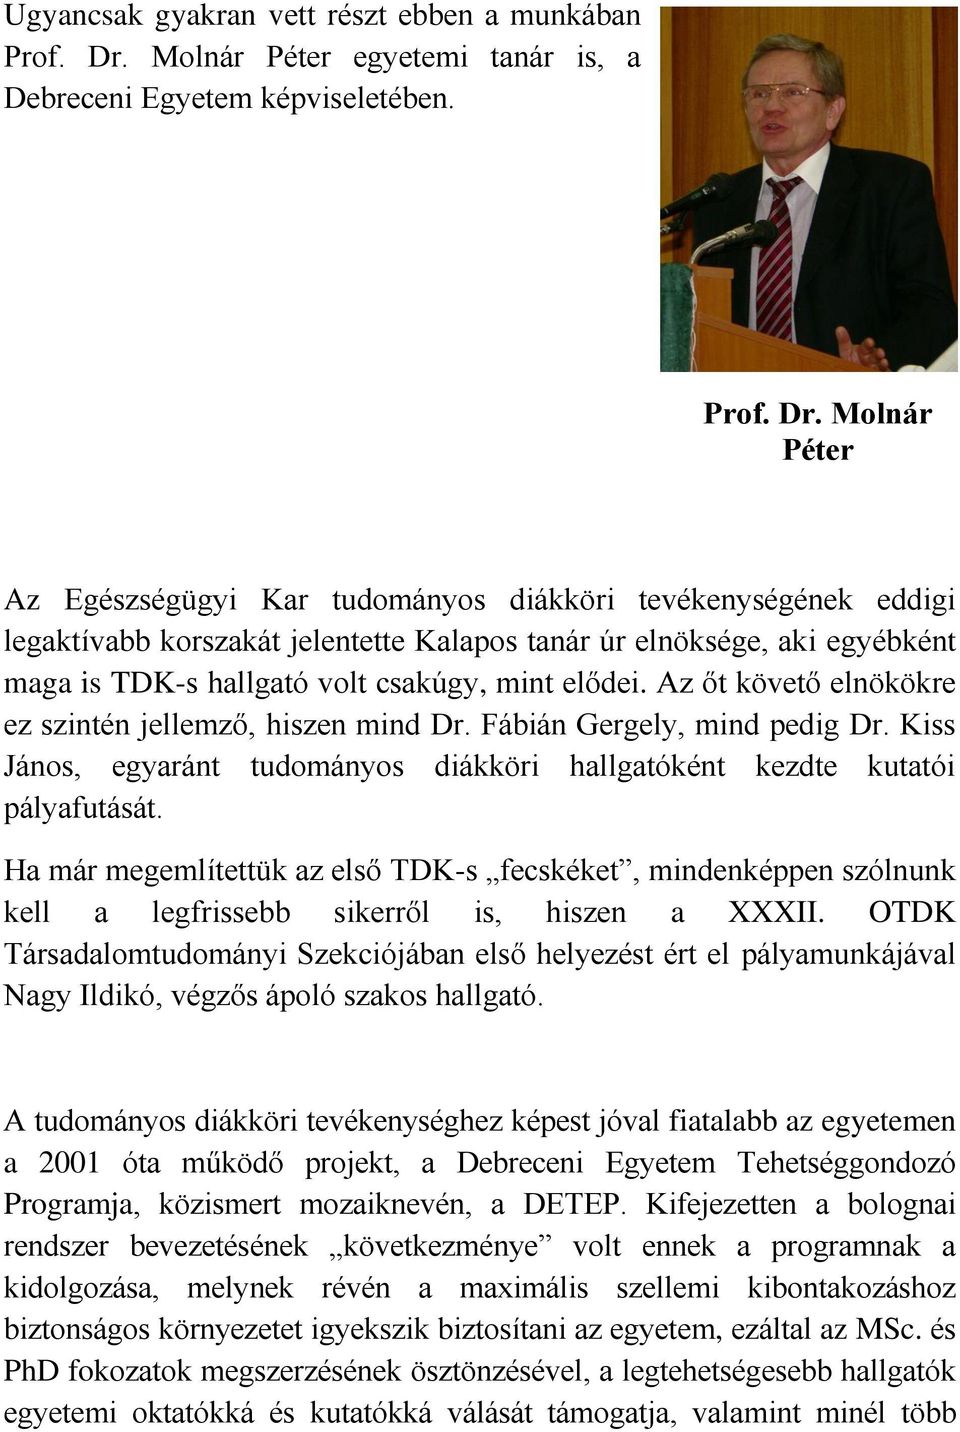 Molnár Péter Az Egészségügyi Kar tudományos diákköri tevékenységének eddigi legaktívabb korszakát jelentette Kalapos tanár úr elnöksége, aki egyébként maga is TDK-s hallgató volt csakúgy, mint elődei.